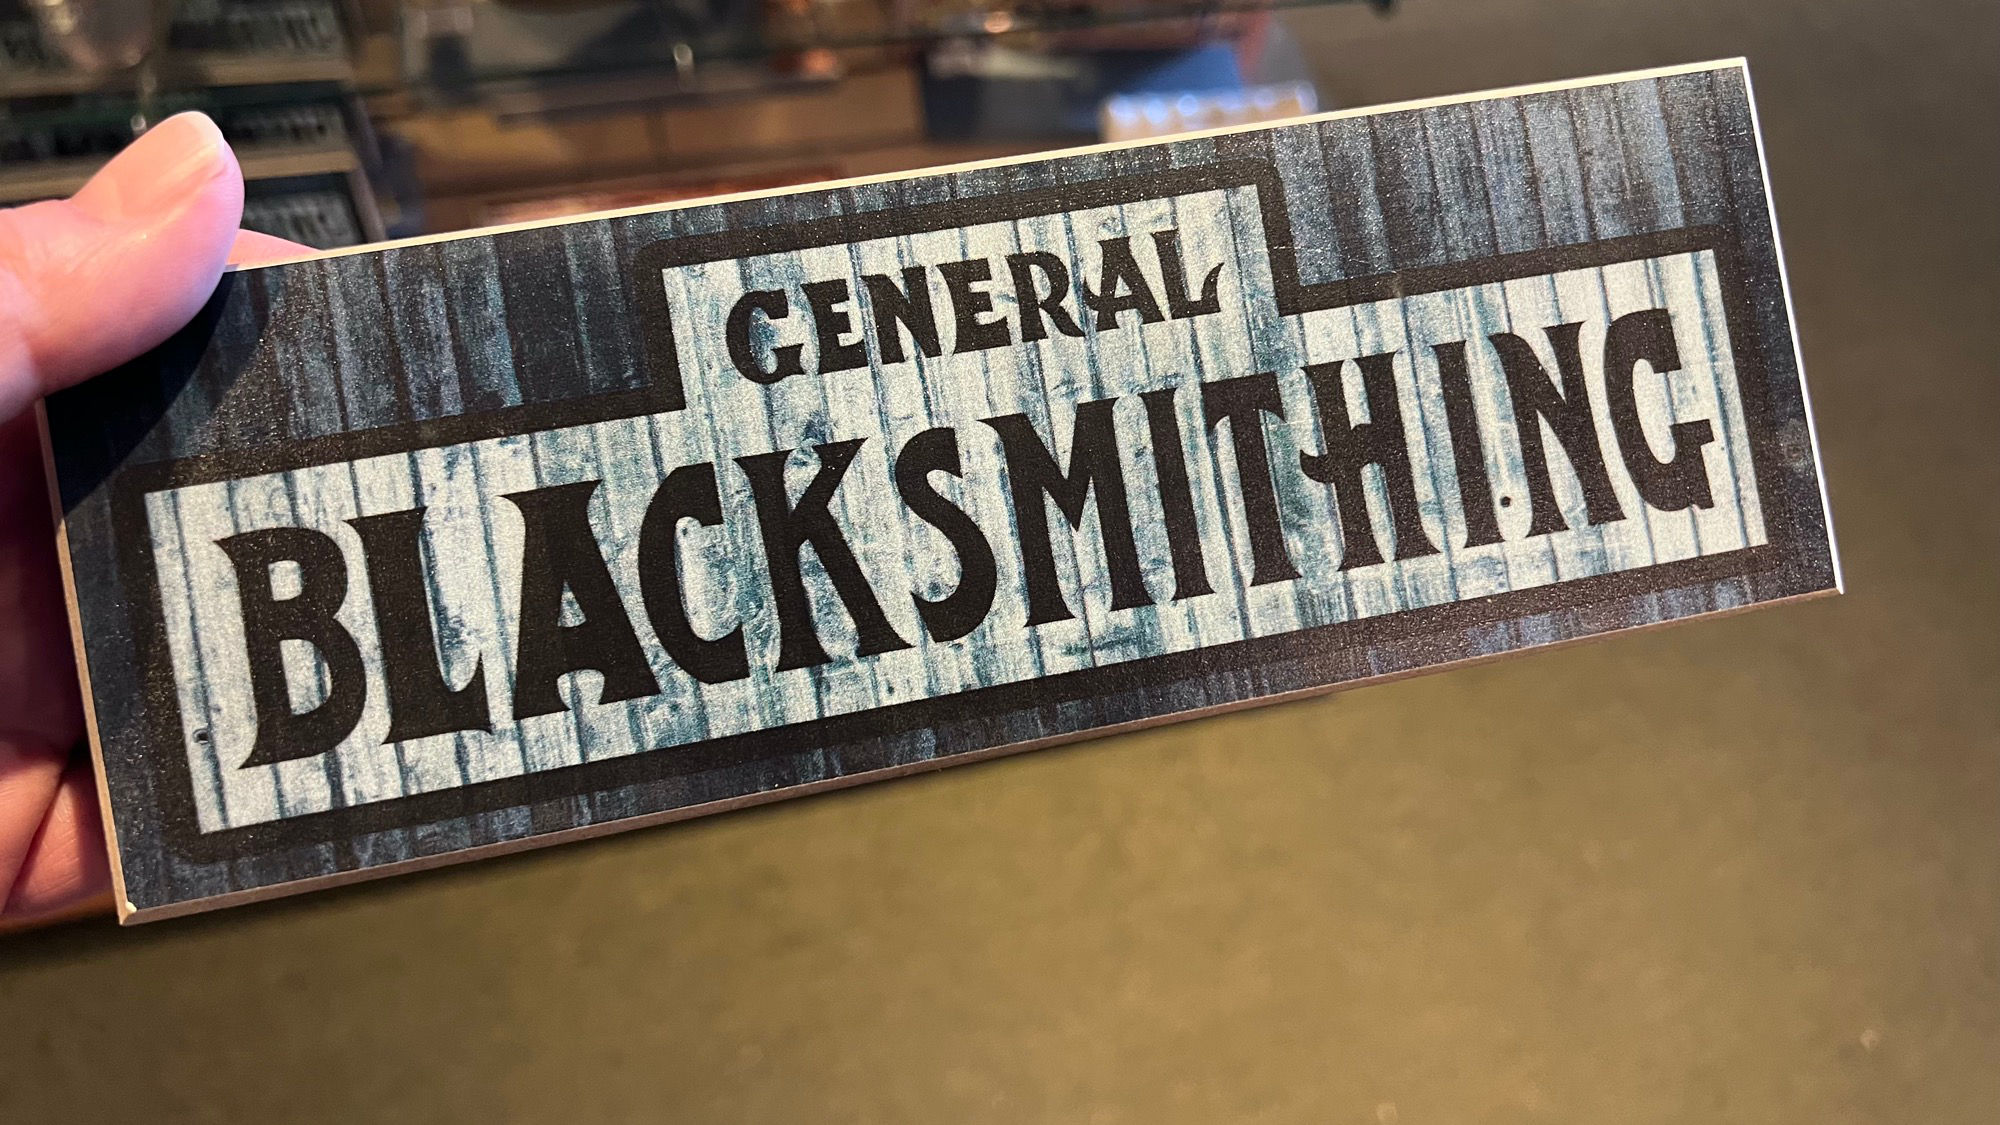 Virginia's Gift Shop General Blacksmithing